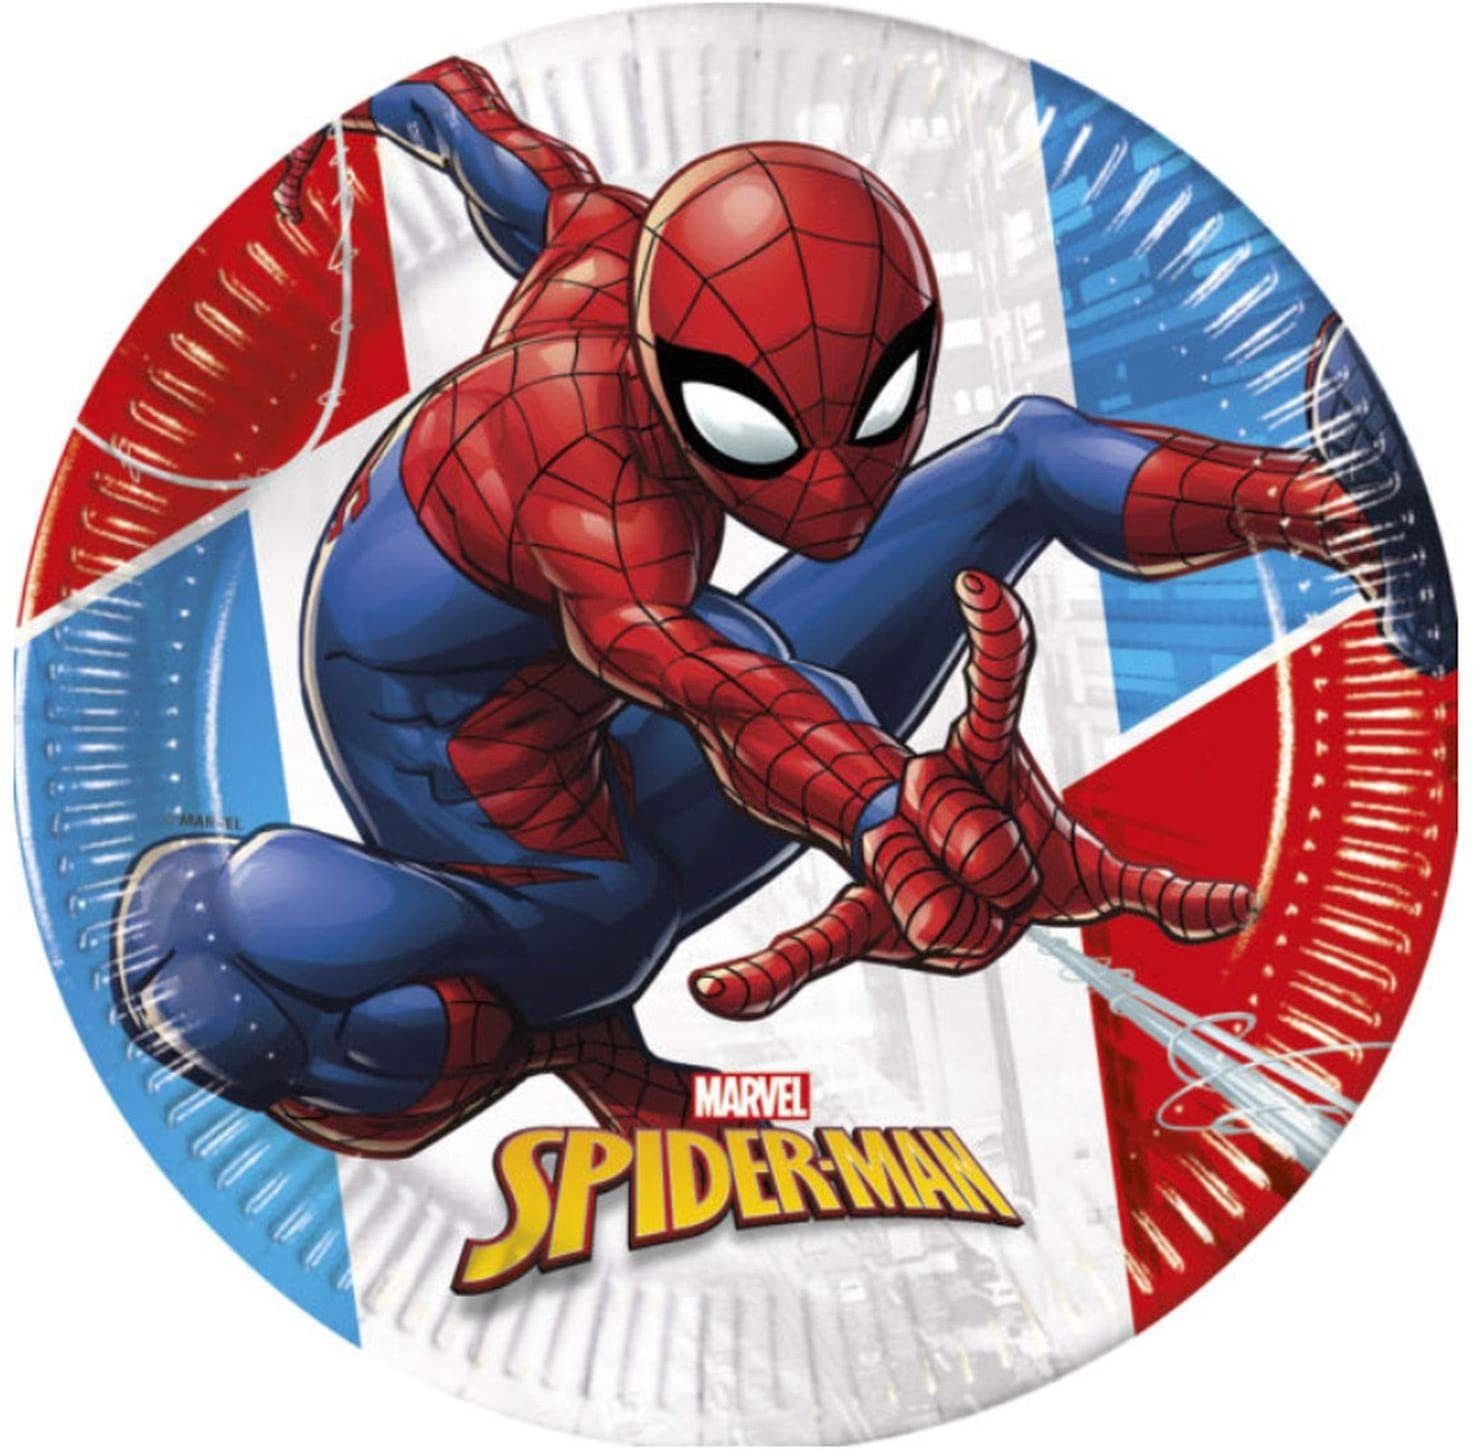 Spiderman Materialien Kindergeburtstags-Set (28-teilig), Einweggeschirr-Set kompostierbare - Procos nachhaltiges